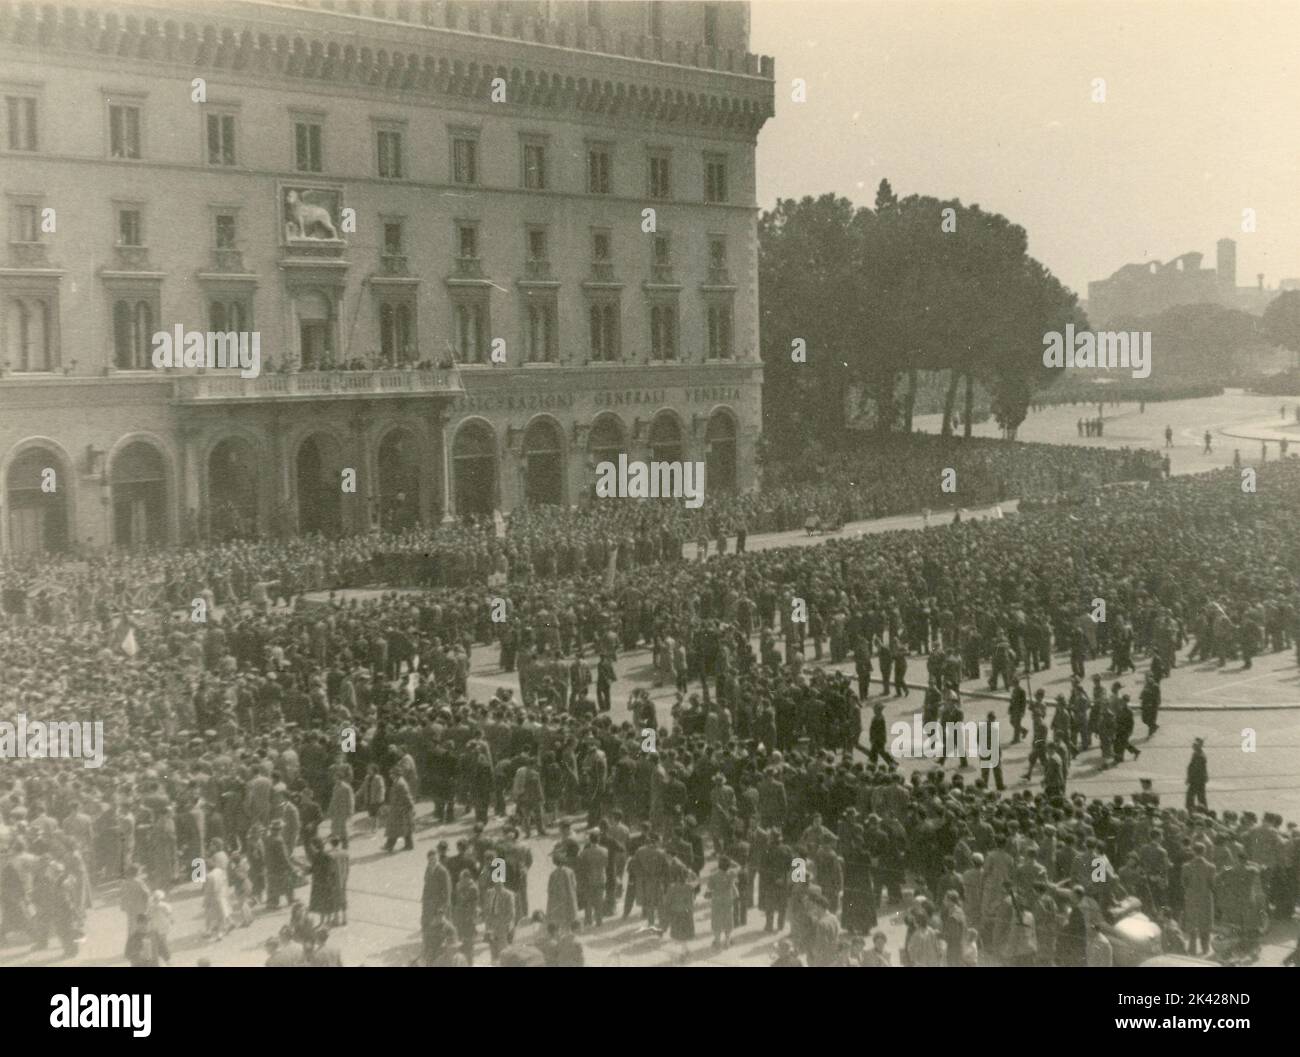 Großes Treffen von Menschen auf der Piazza Venezia, Rom, Italien 1930s Stockfoto